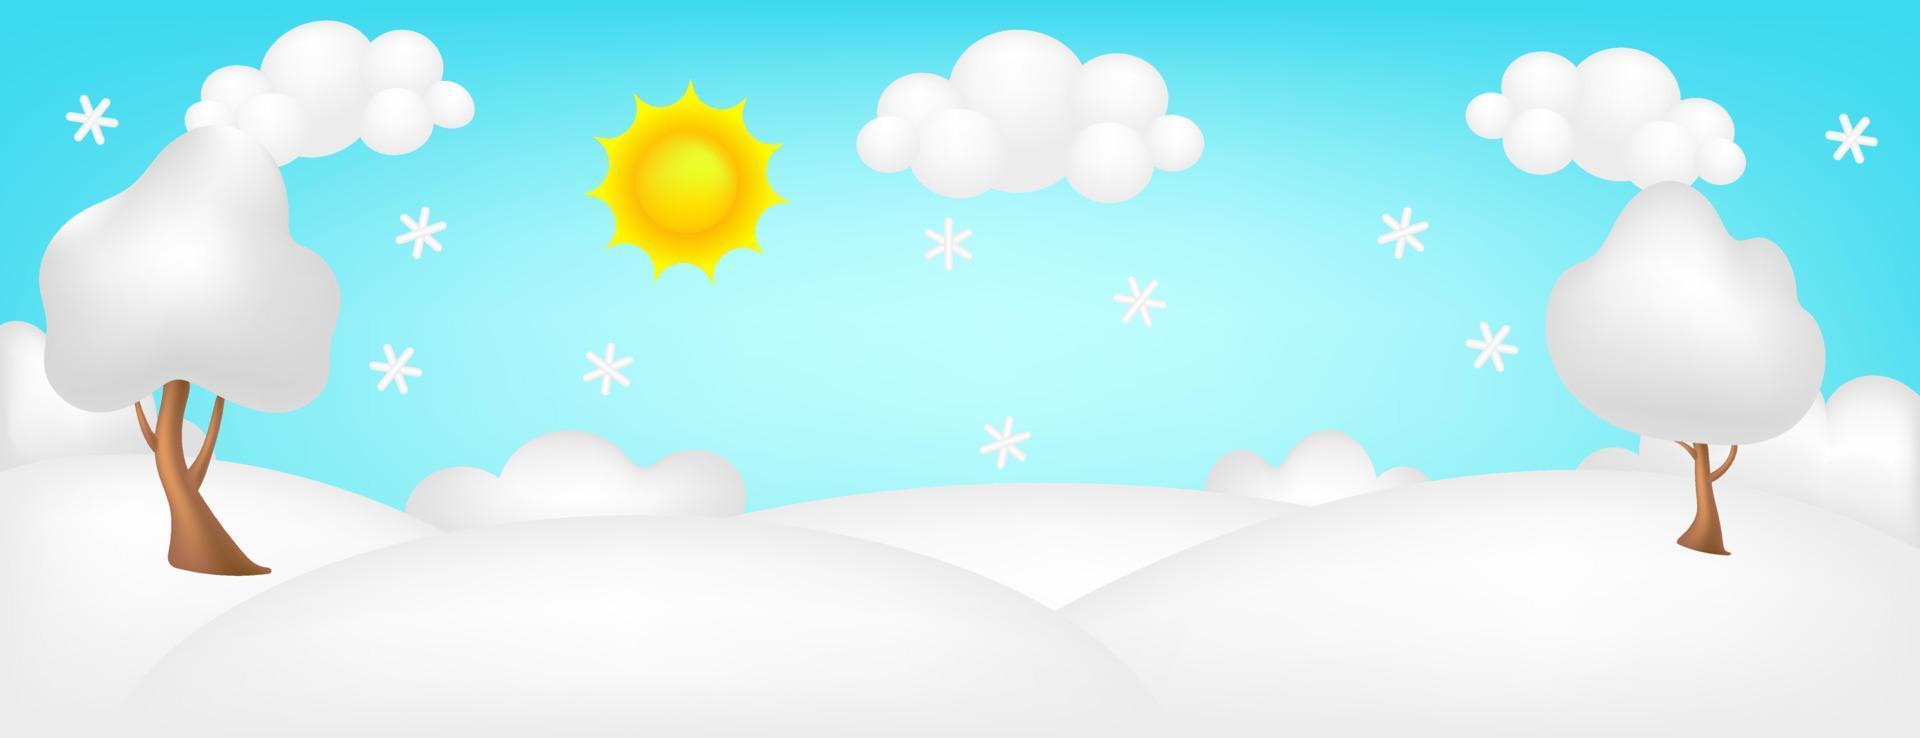 illustration vectorielle 3d de panorama de prairie. paysage lumineux du fond des enfants de la vallée d'hiver. joli paysage coloré avec neige, arbres, flocons de neige, ciel bleu, soleil, nuages pour les enfants. joyeux Noël. vecteur